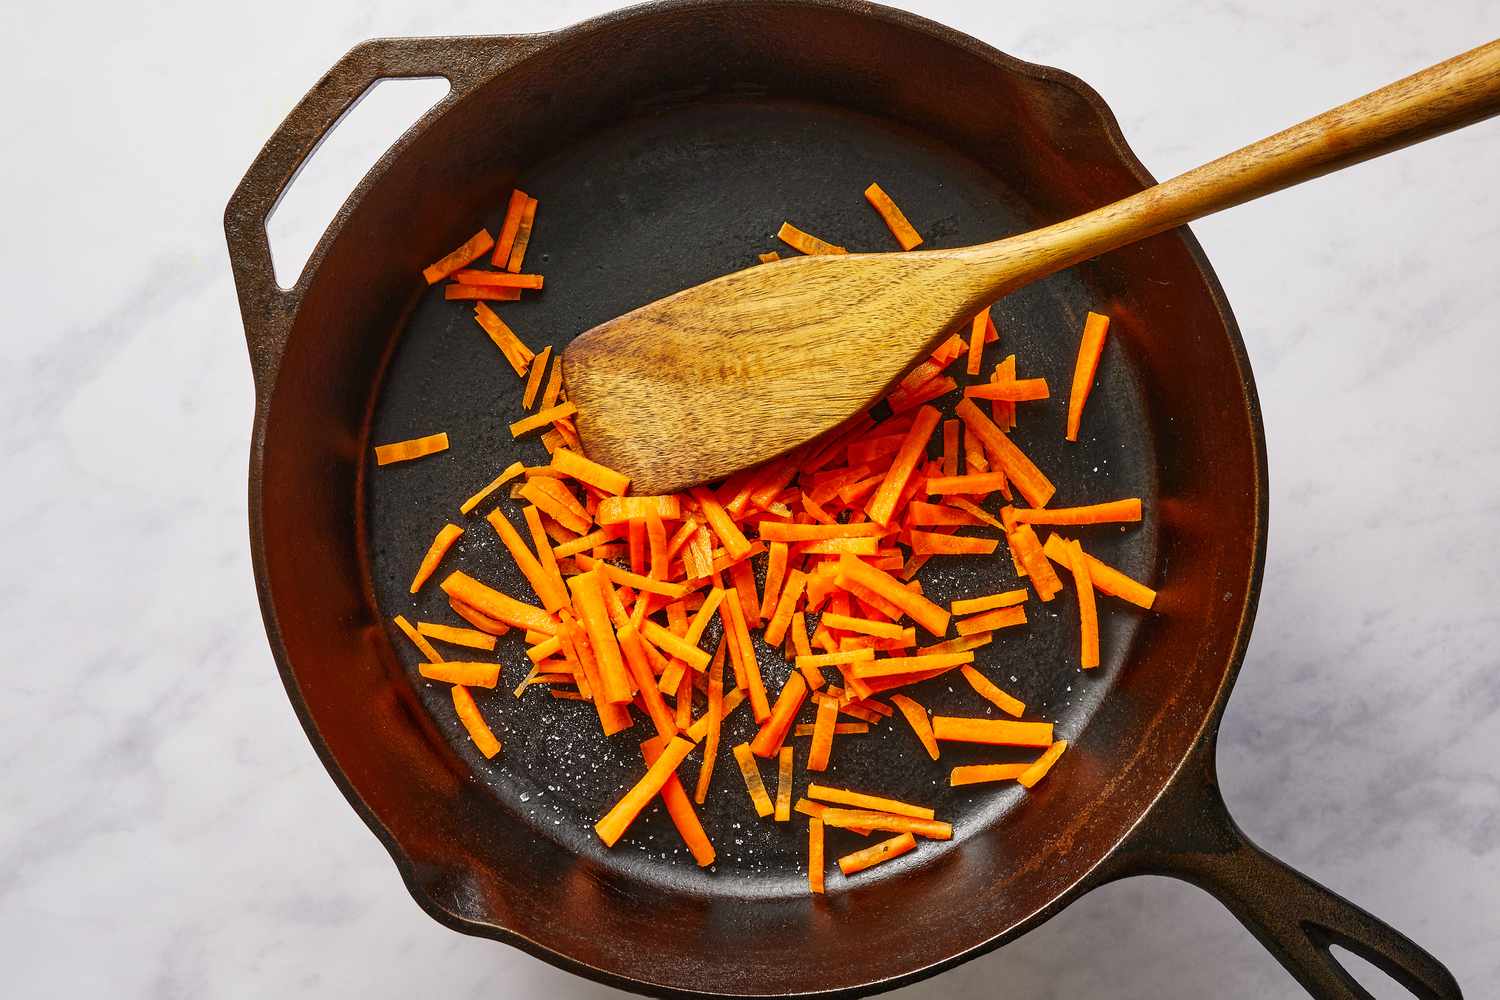 Sauté carrots with salt